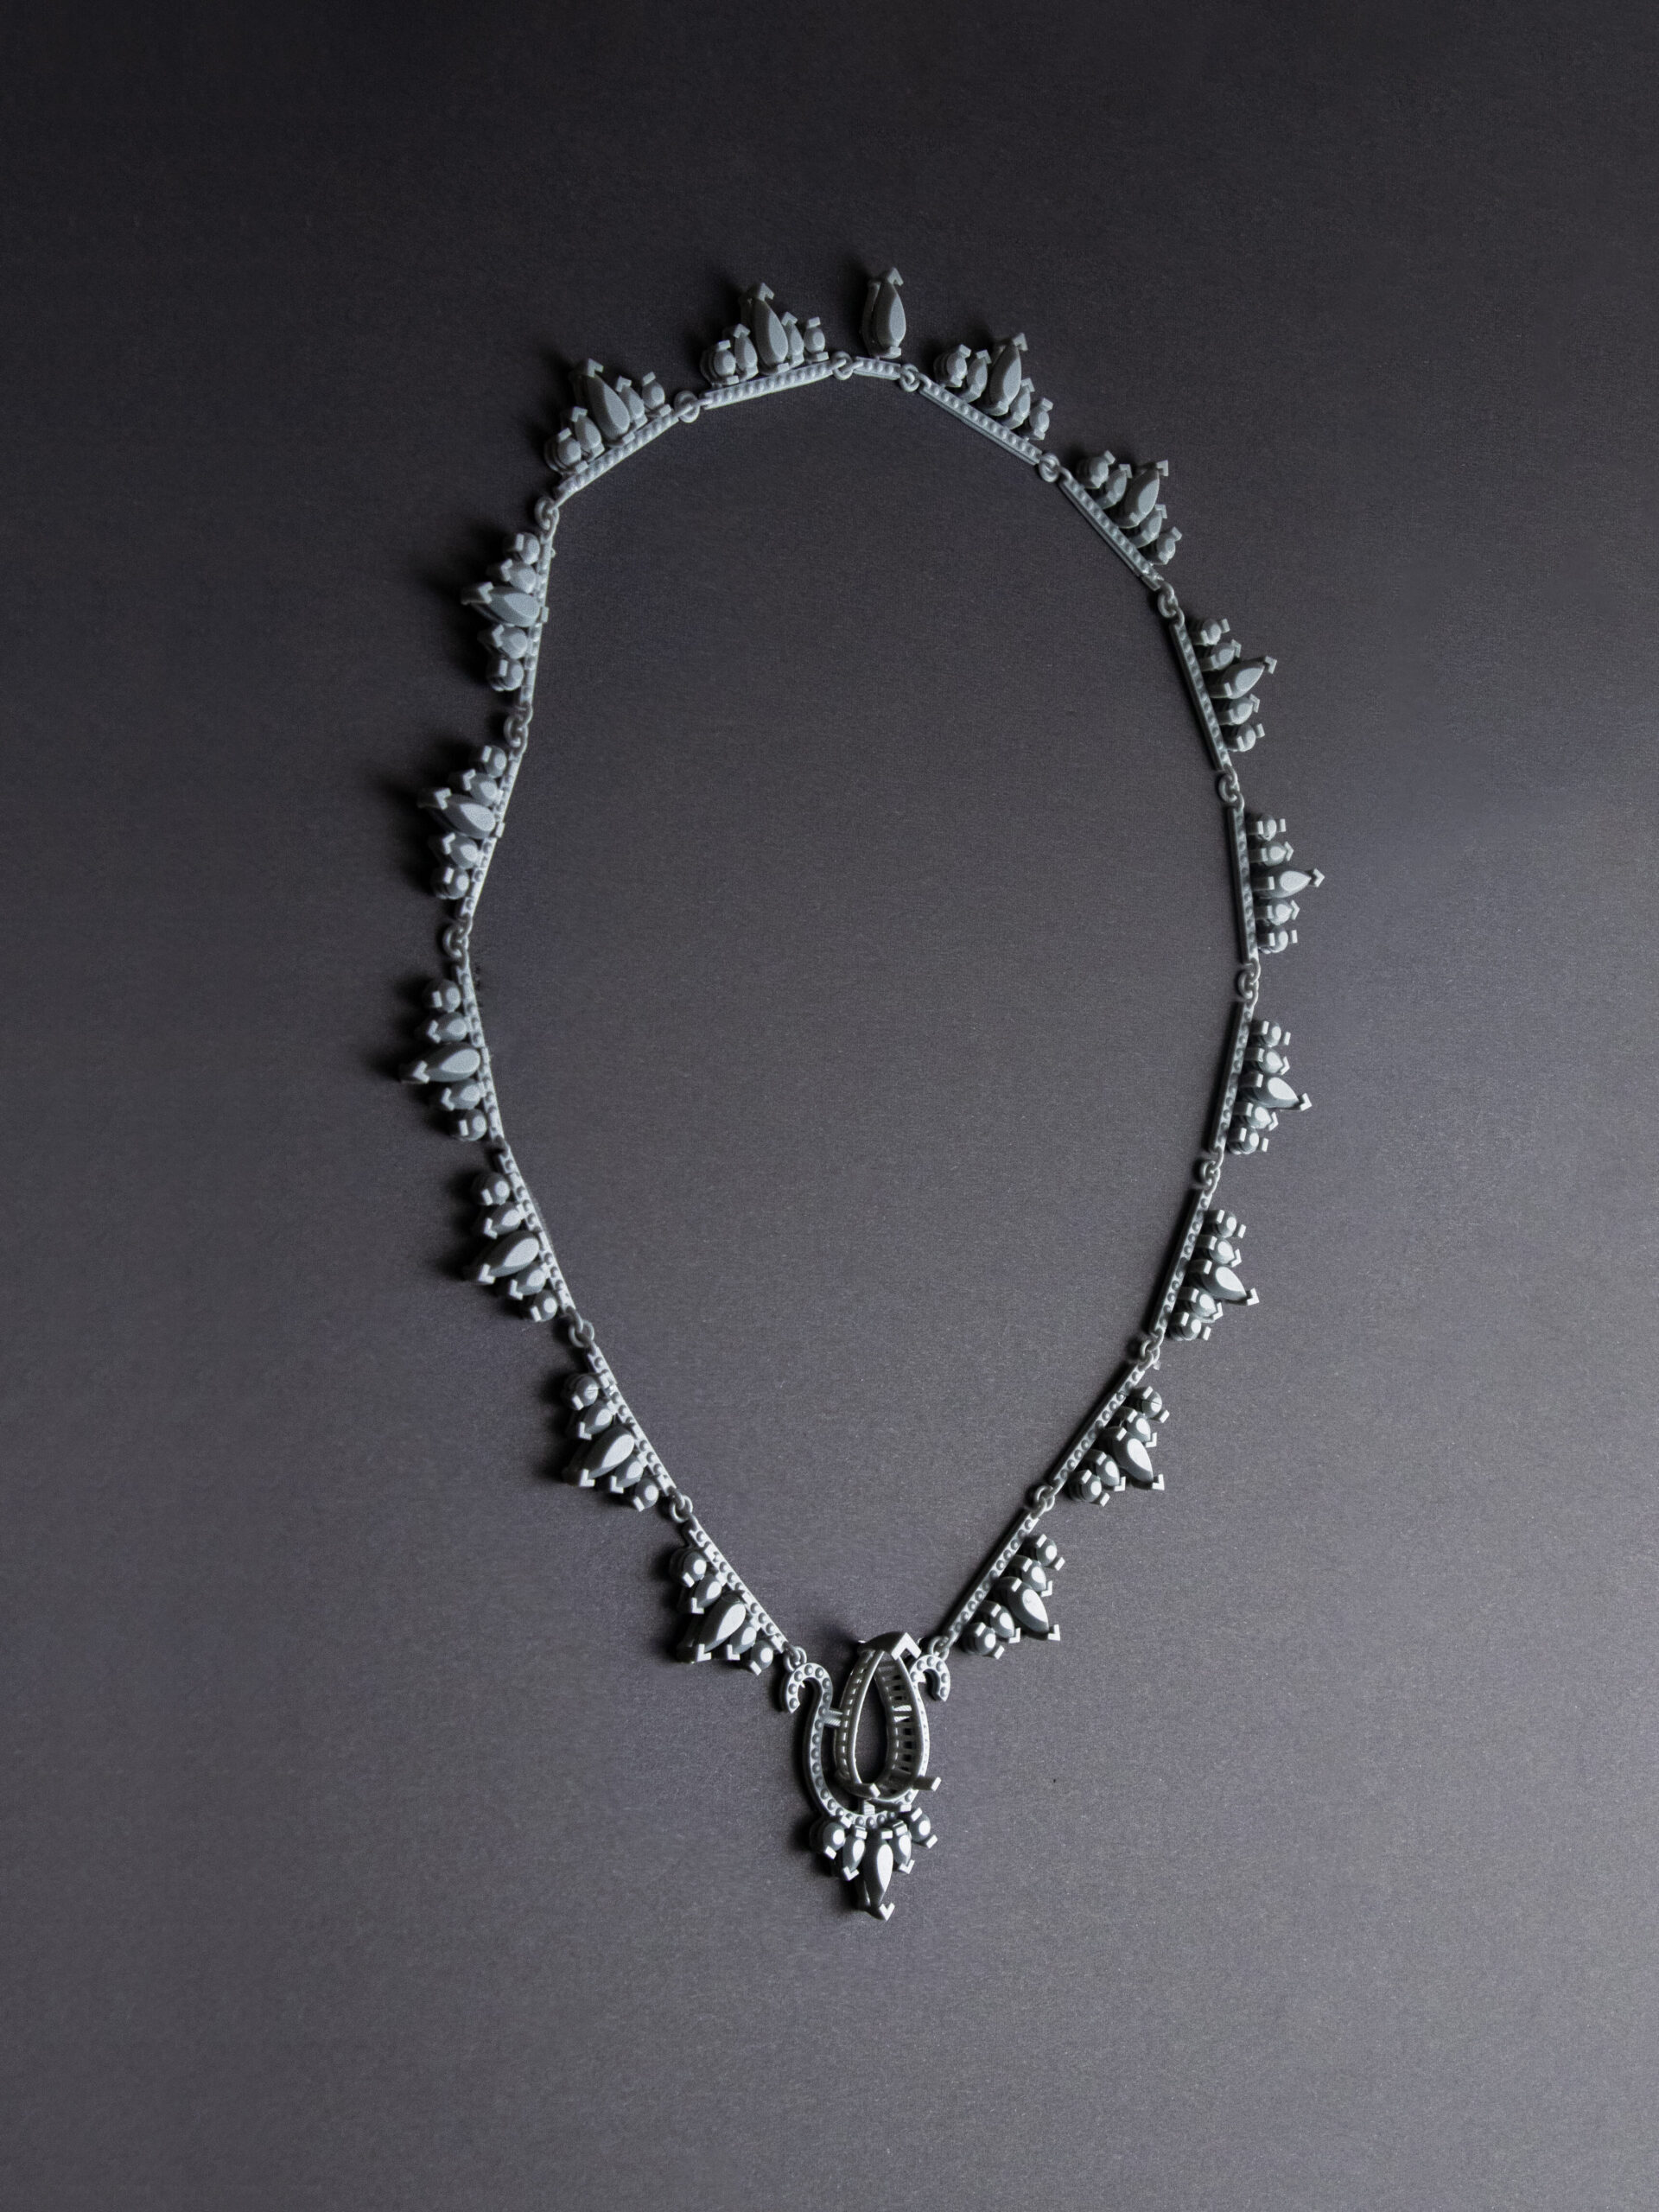 BAJ X Graff fine jewellery project award winner 3D printed CAD